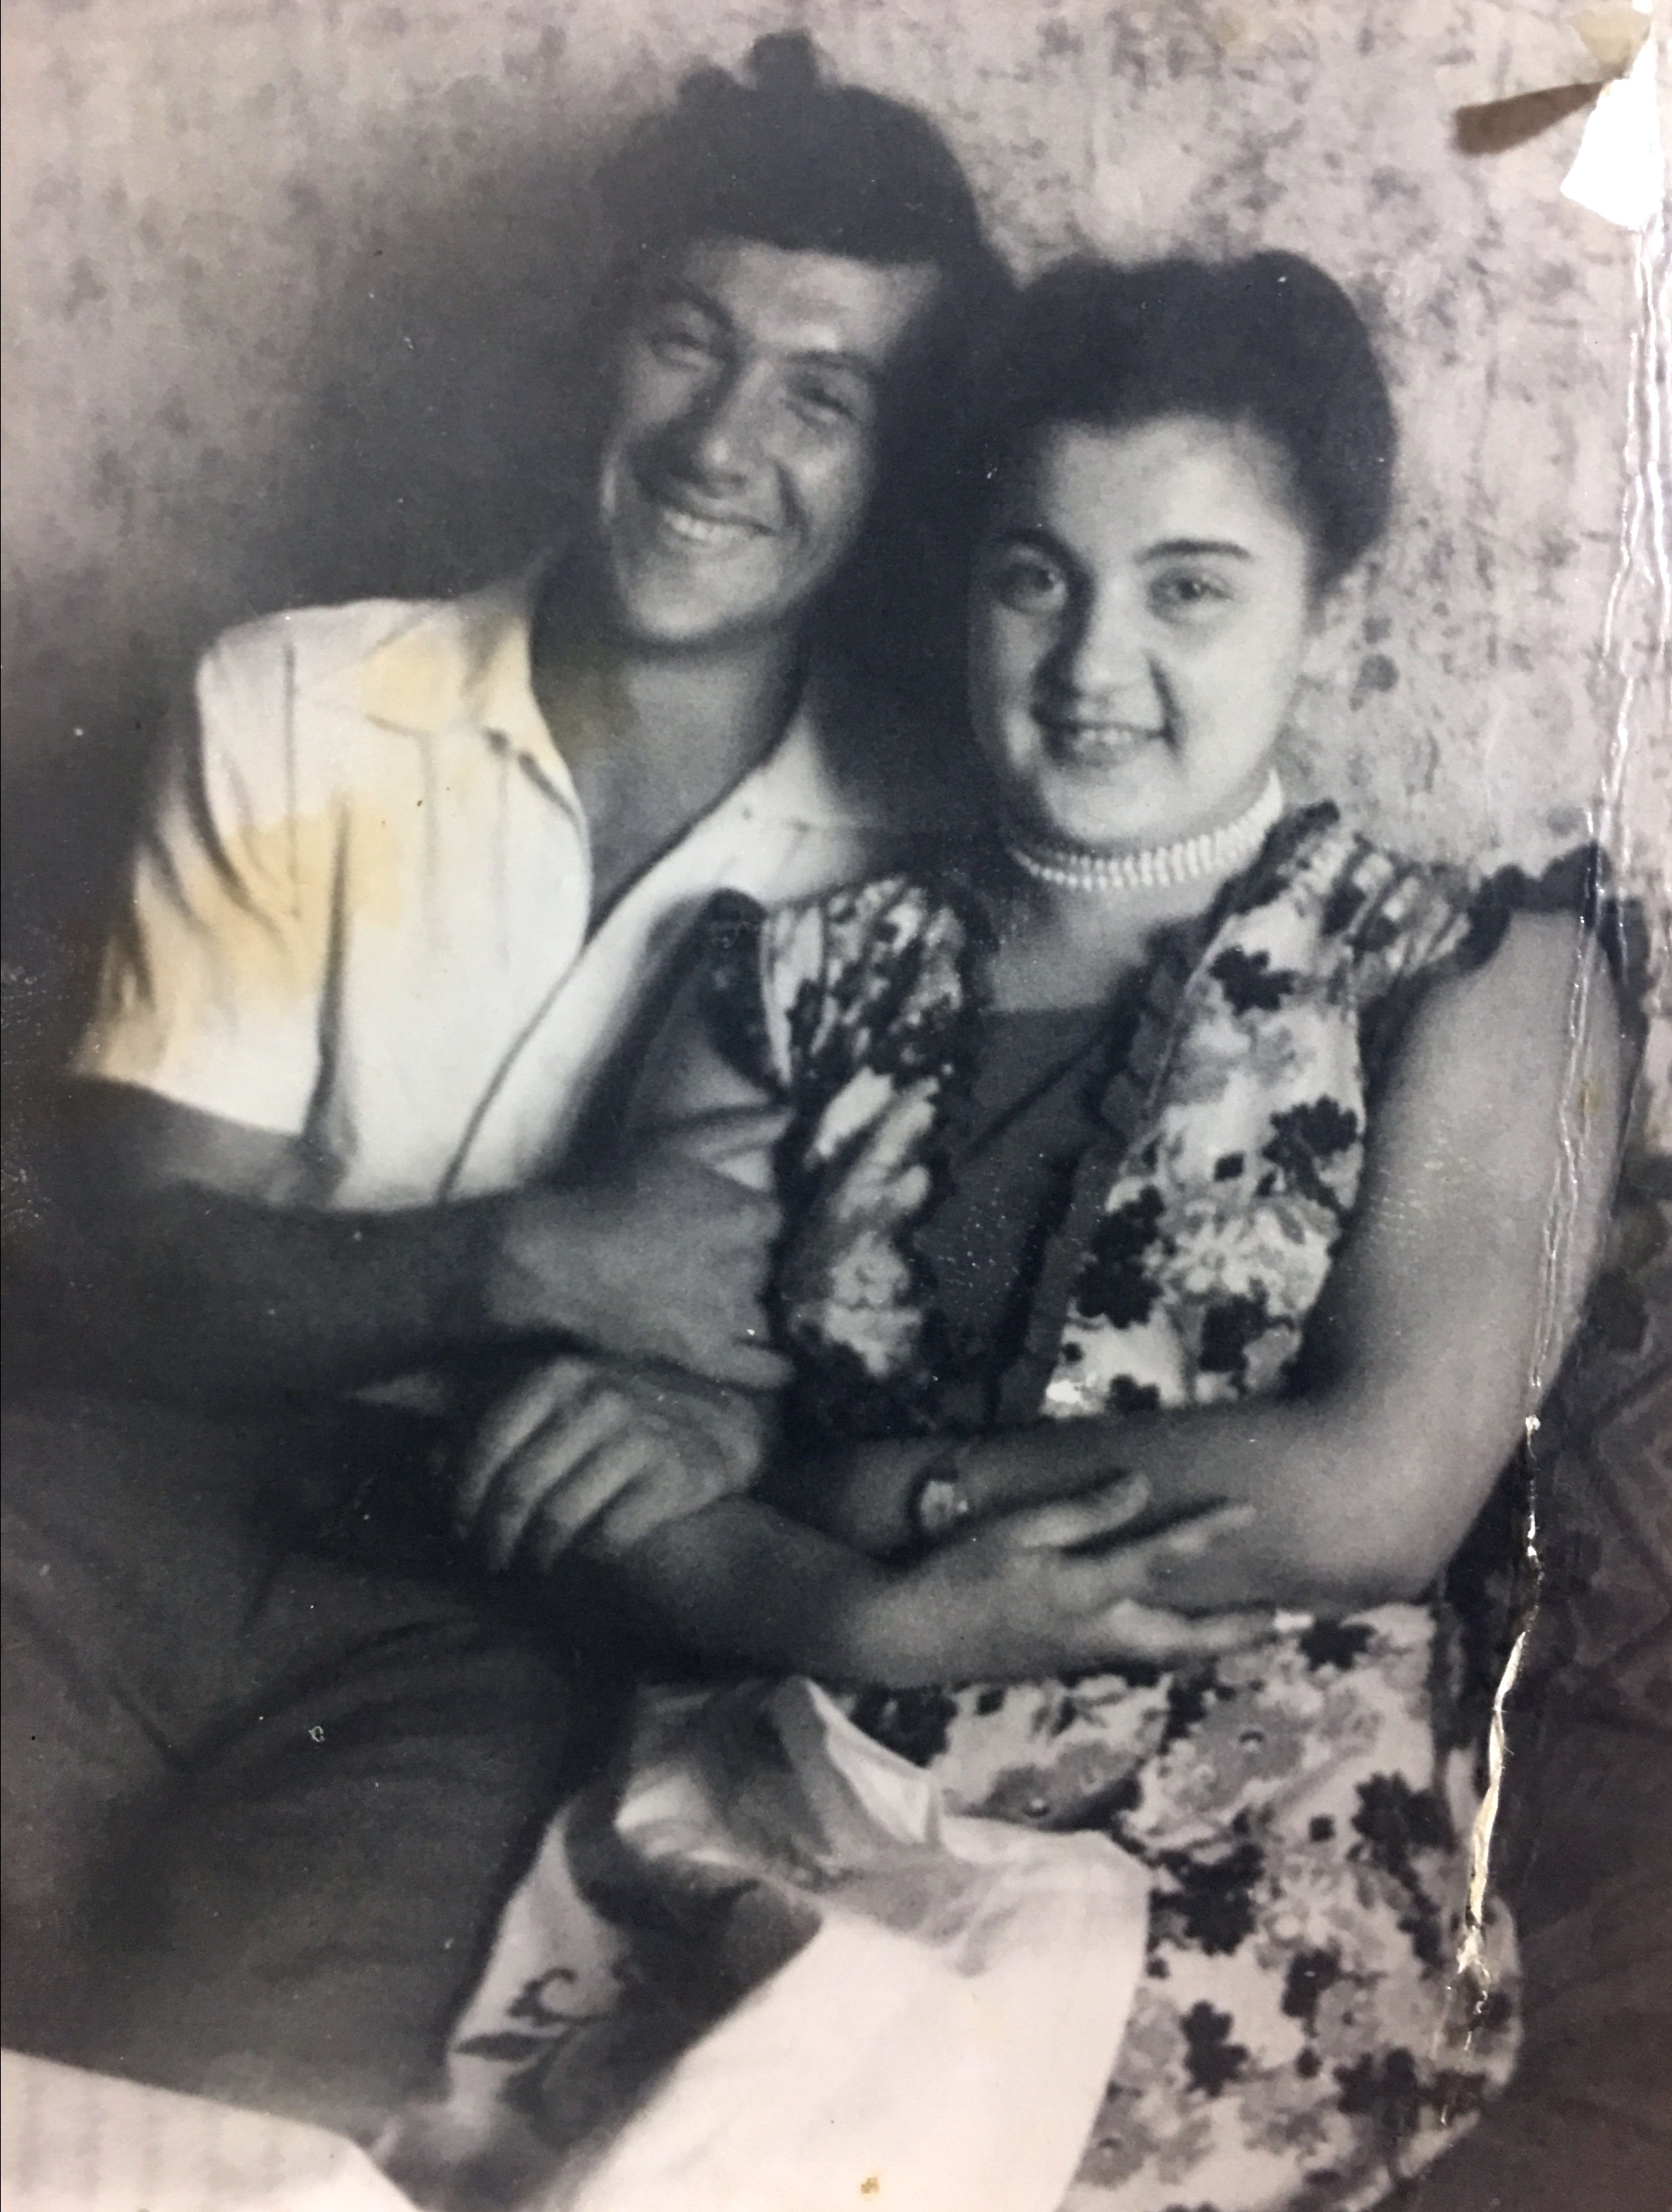 סבתא וסבא לפני 60 שנה בני 19. כך התחילה אהבה של כל החיים